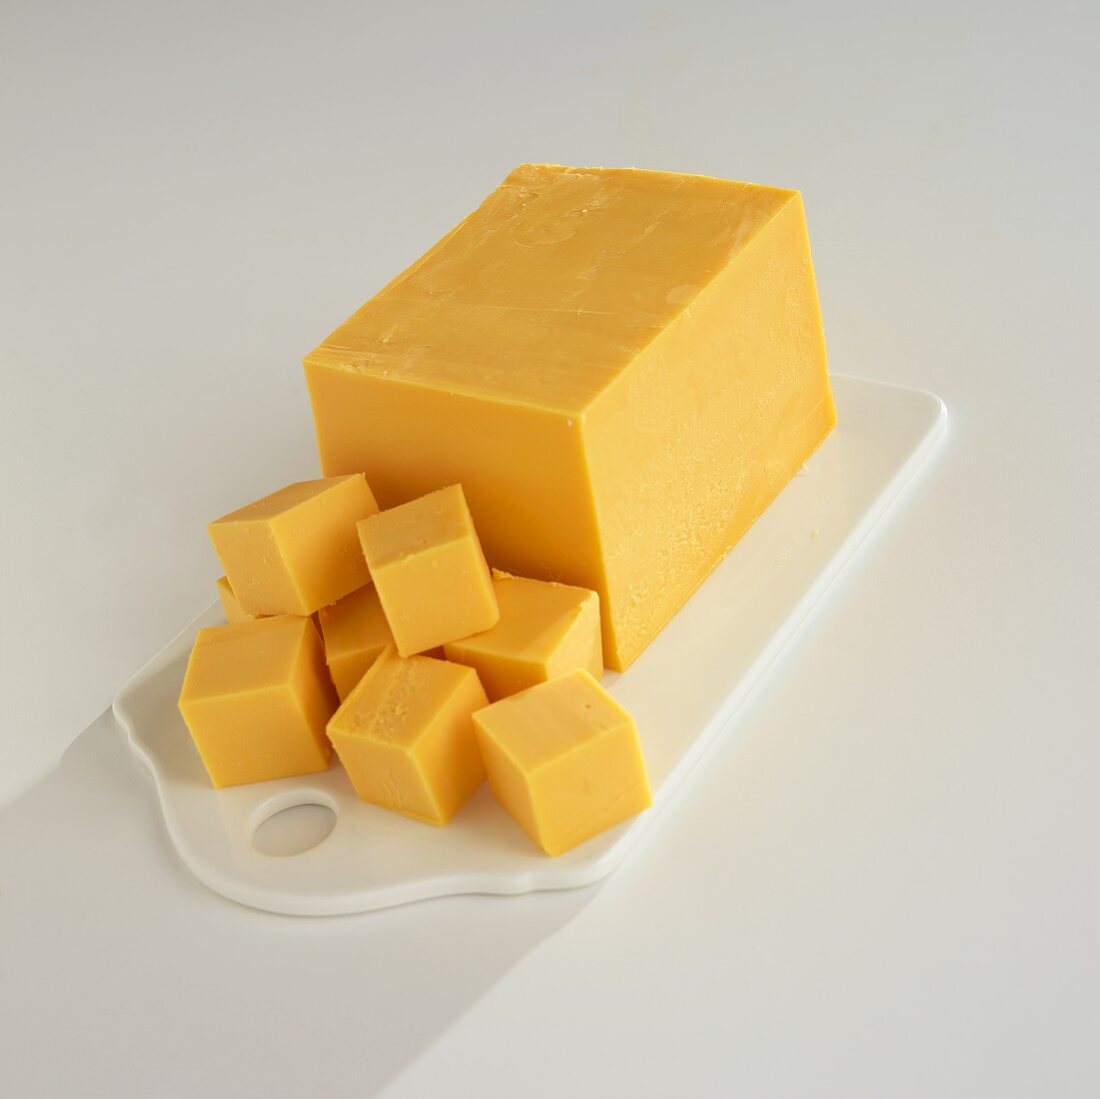 3 чиз. Цвет Cheese. Сыр цвет. Ламблер желтый сыр. Сыр цвета ириски.